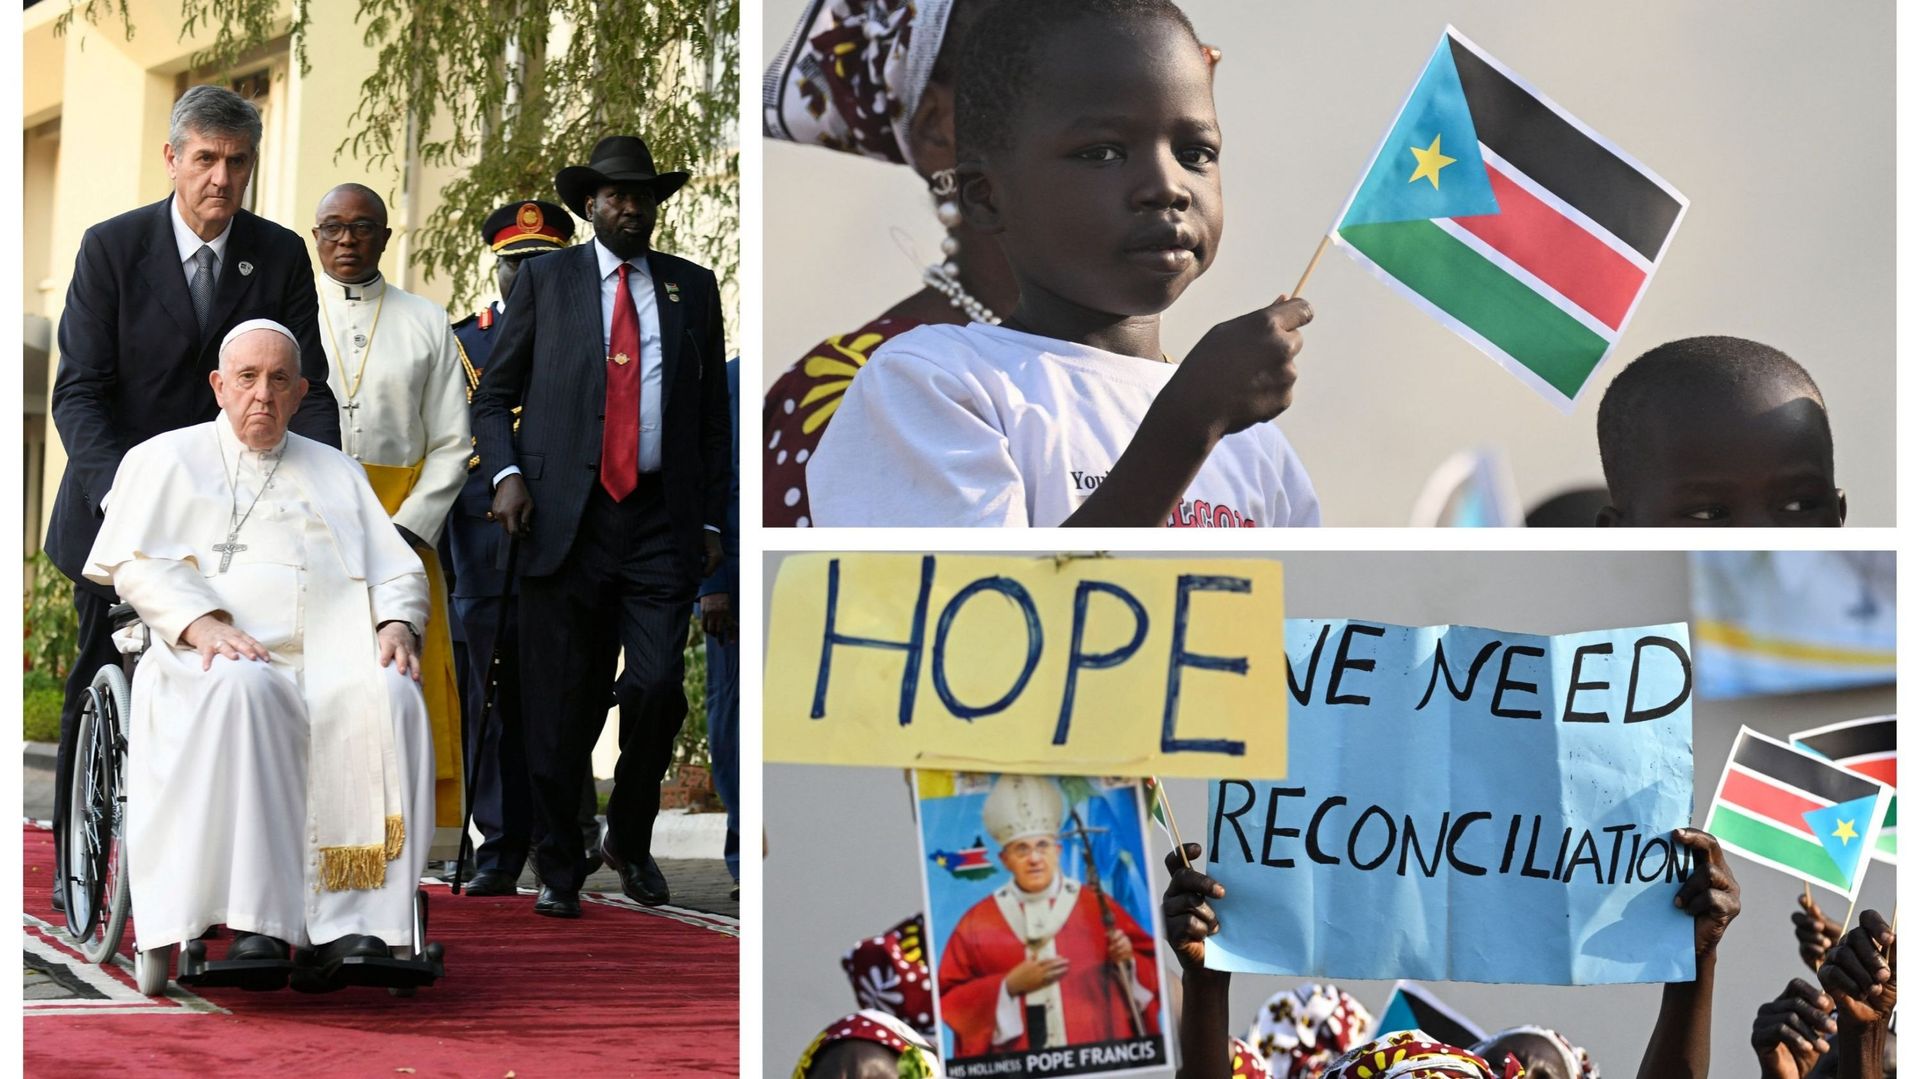 Le pape François à Juba (accompagné du président sud soudanais), et accueil de la population